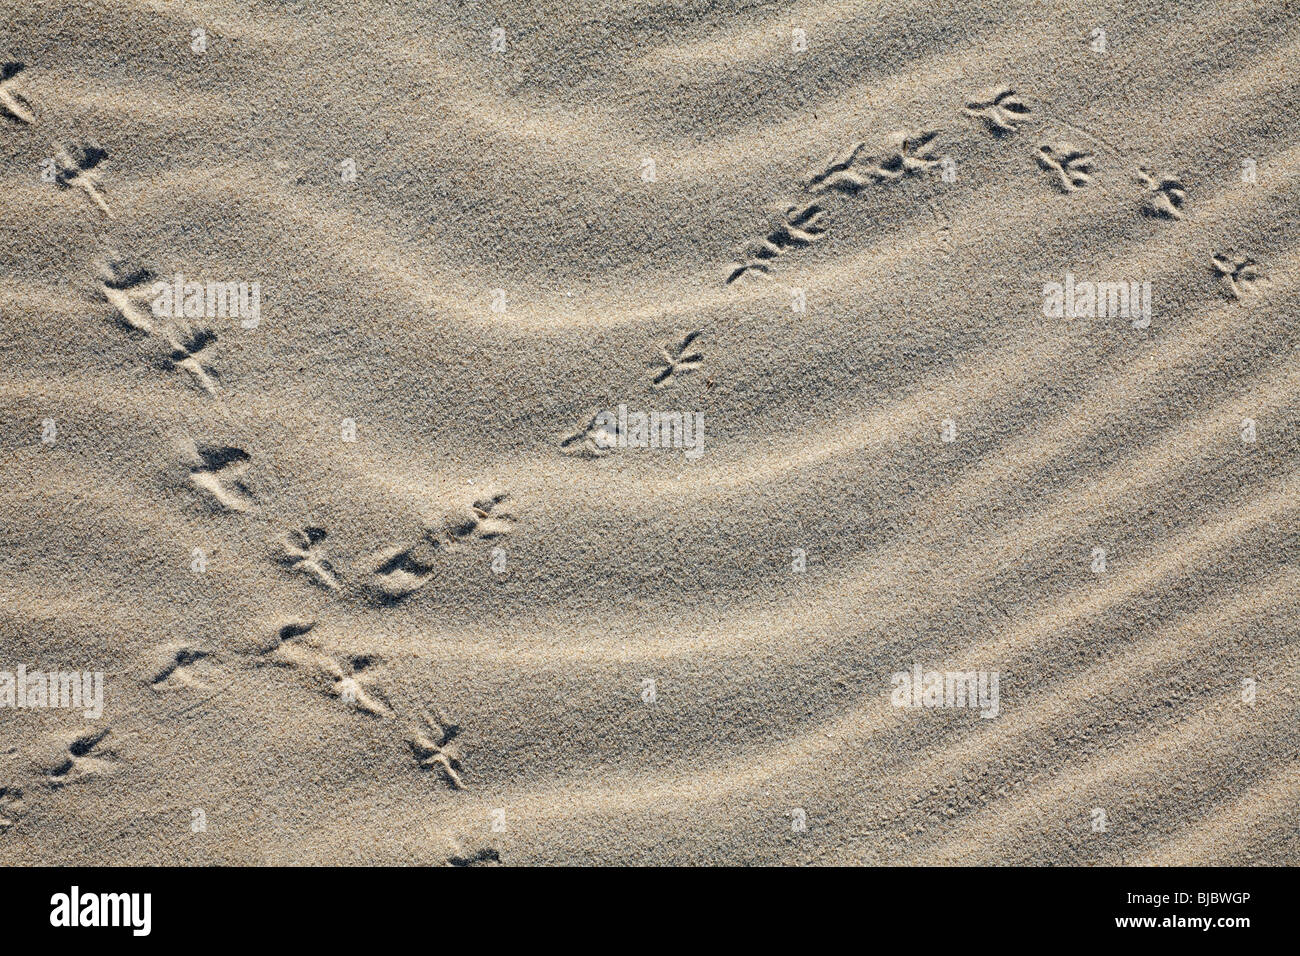 Les pistes d'oiseaux dans le sable, l'île de Texel, Hollande Banque D'Images